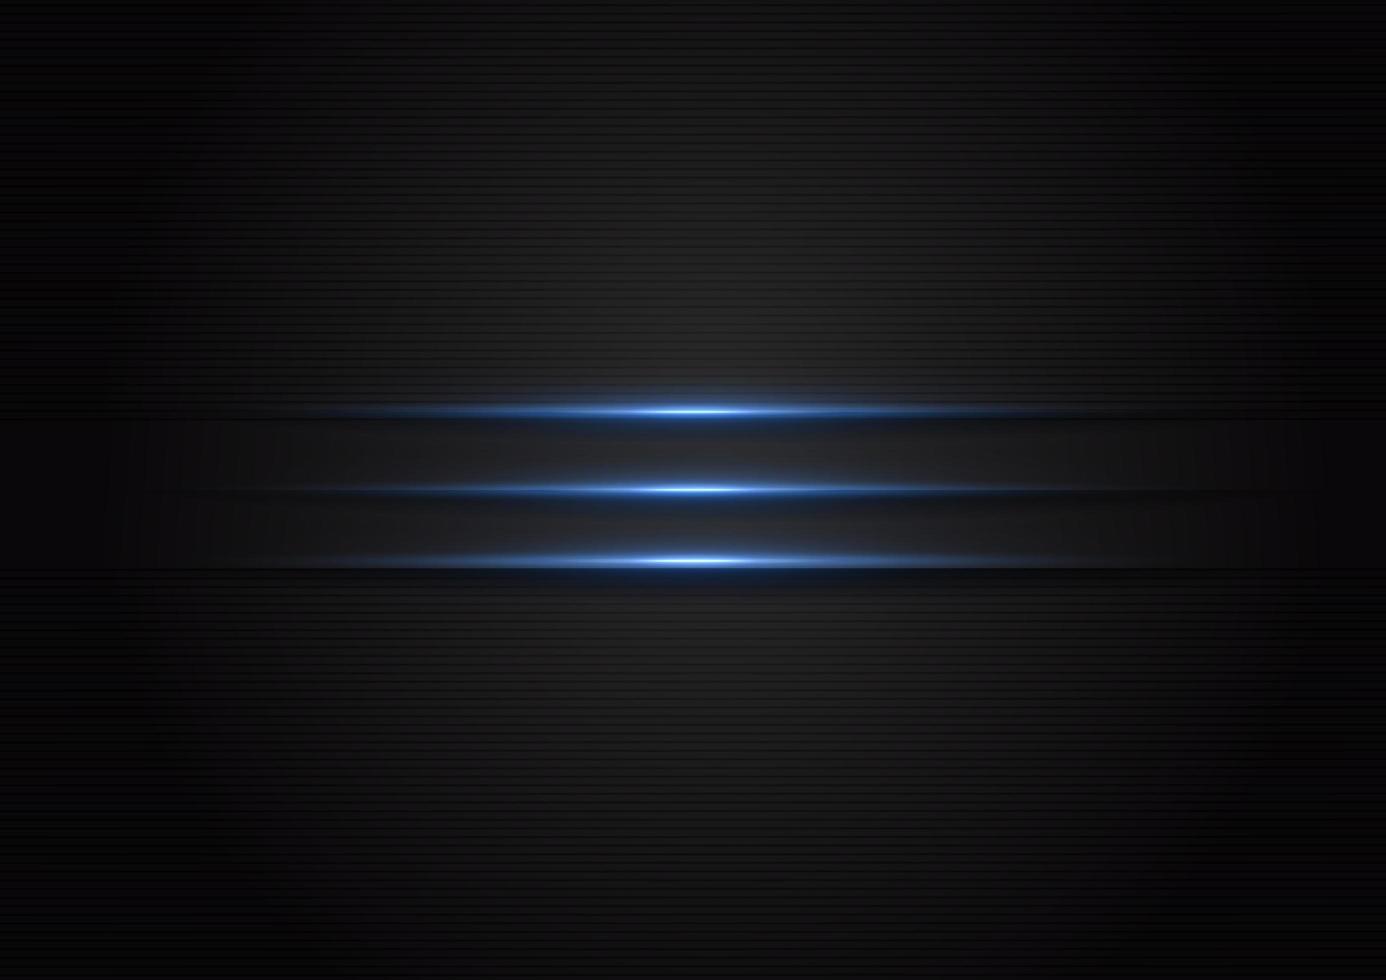 abstracte horizontale blauwe lichte lijn op metallic zwarte achtergrond met ruimte voor tekst vector